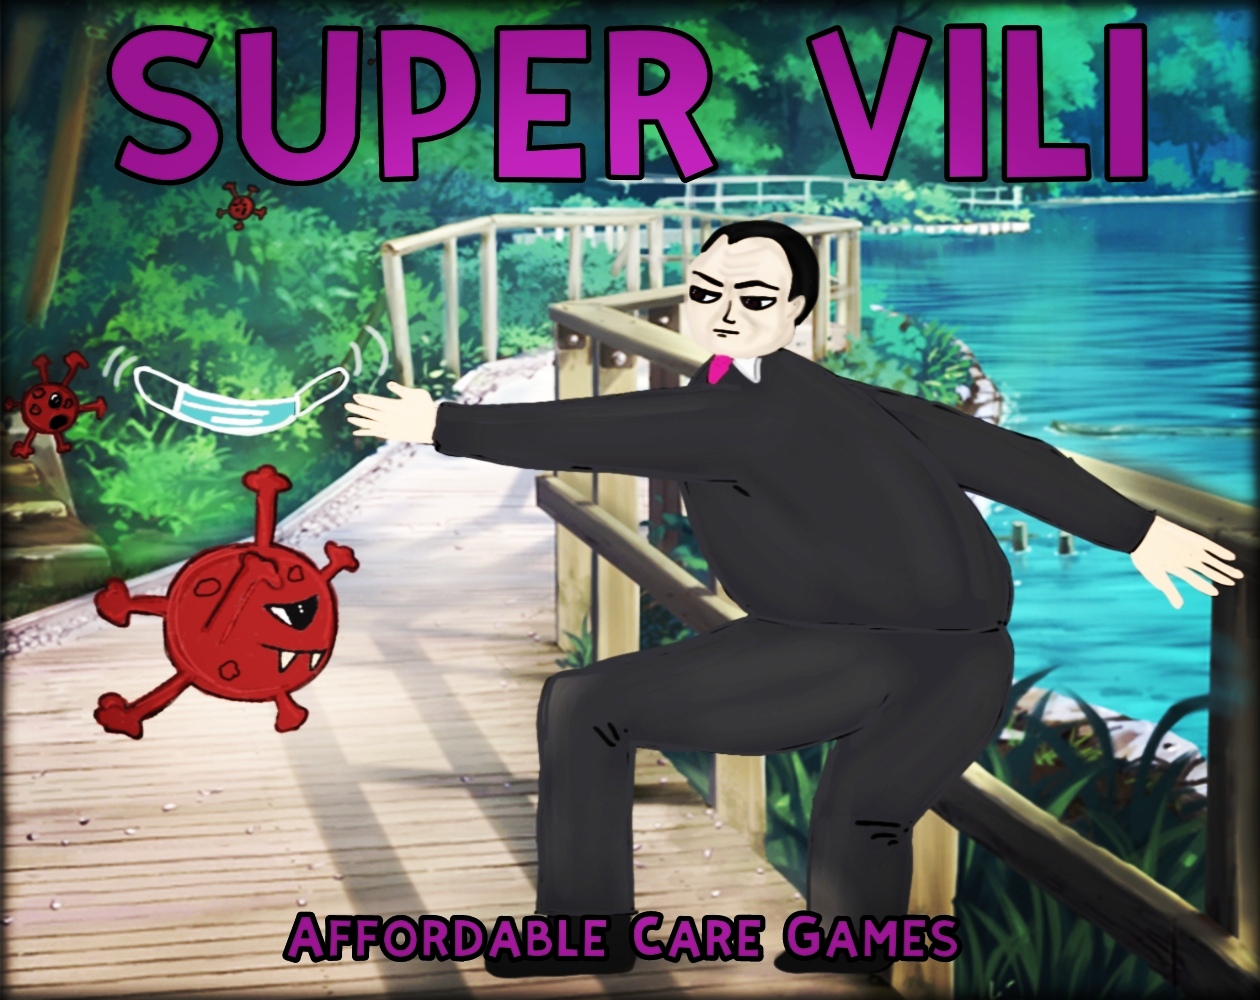 Super Vili attacks the virus